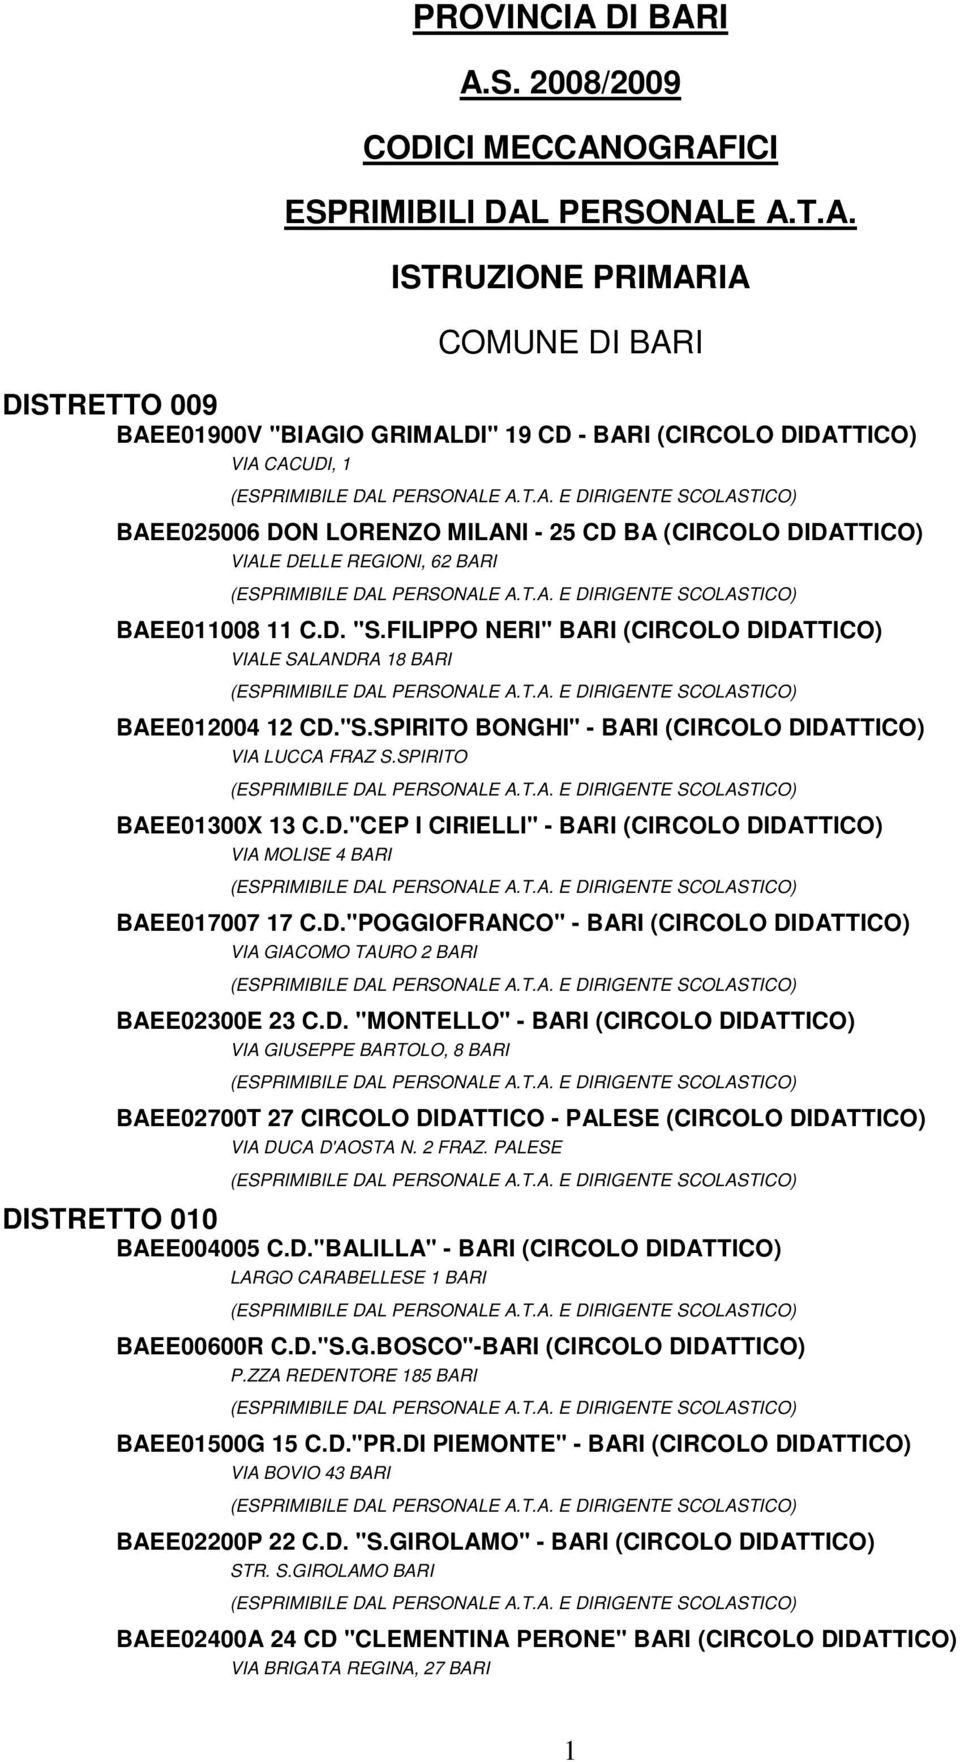 I A.S. 2008/2009 CODICI MECCANOGRAFICI ESPRIMIBILI DAL PERSONALE A.T.A. ISTRUZIONE PRIMARIA COMUNE I DISTRETTO 009 BAEE01900V "BIAGIO GRIMALDI" 19 CD - BARI (CIRCOLO DIDATTICO) VIA CACUDI, 1